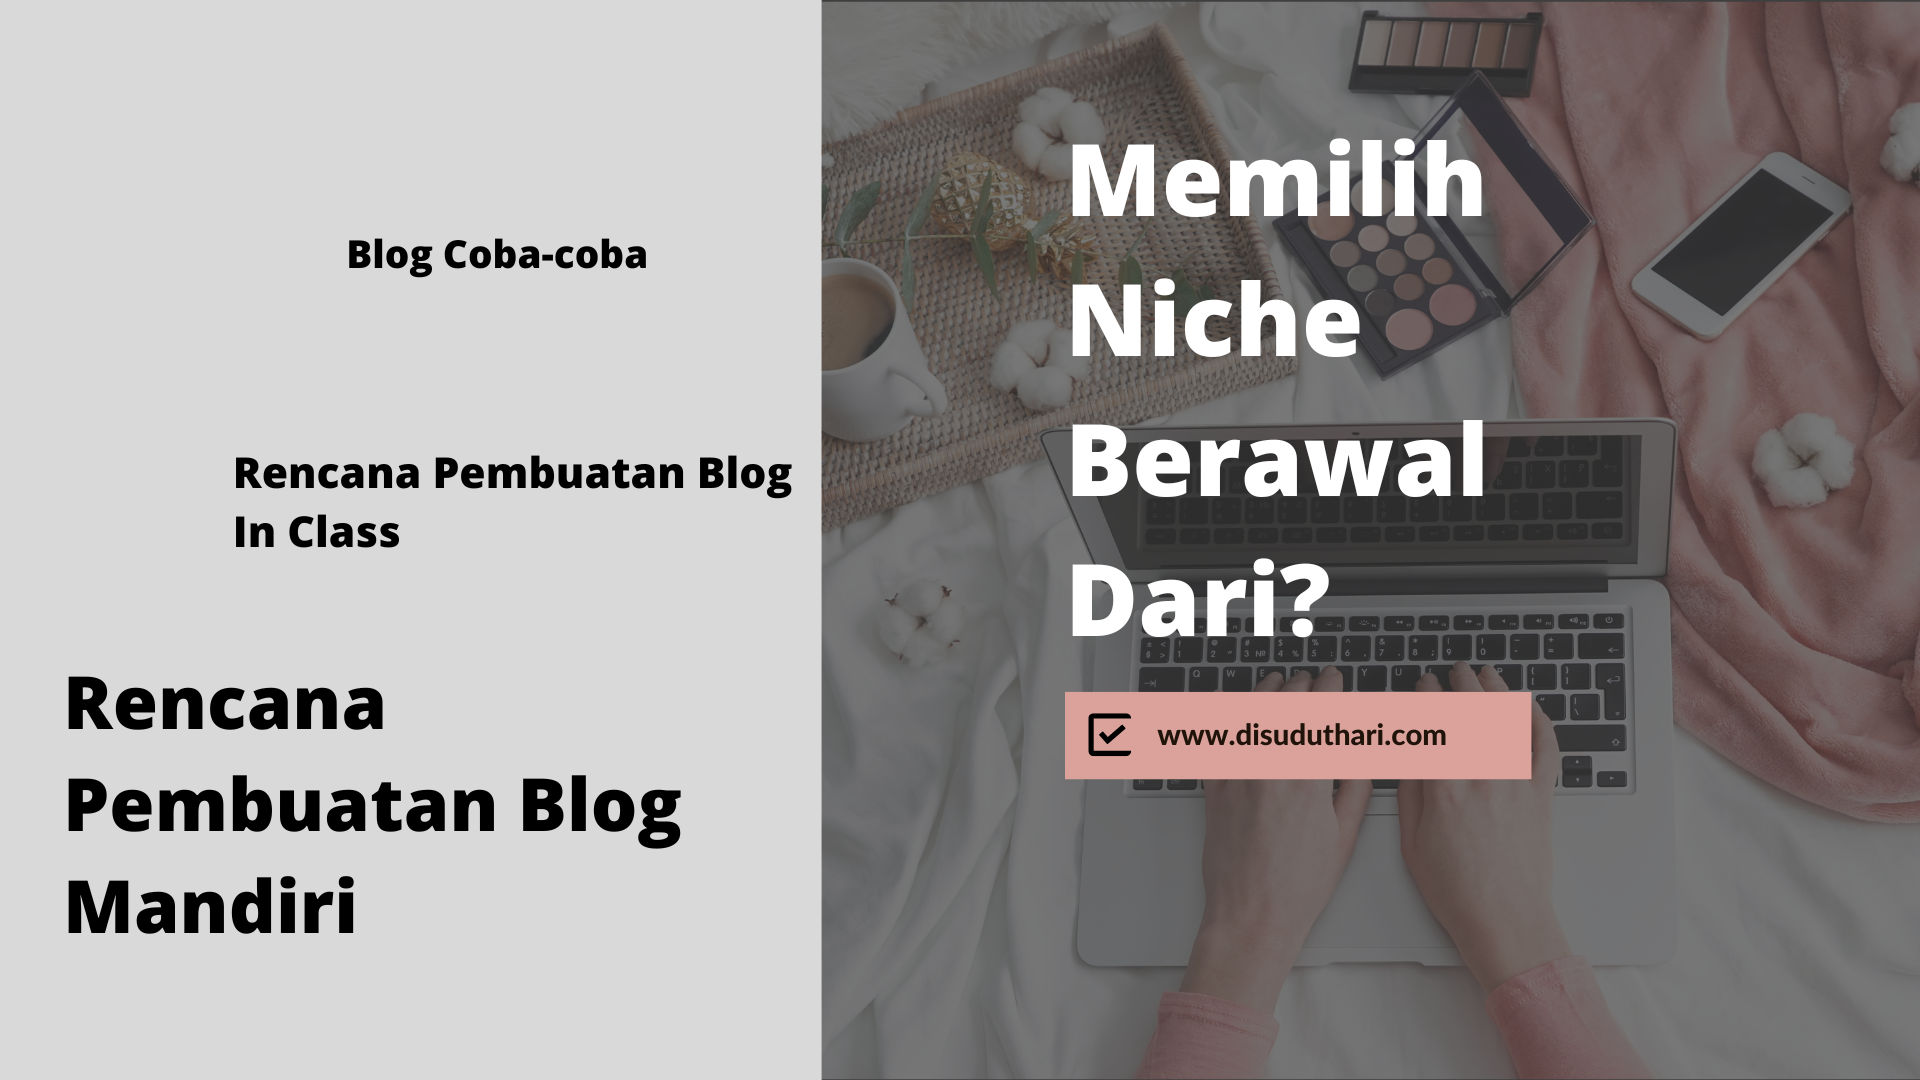 Pengalaman memilih niche blog